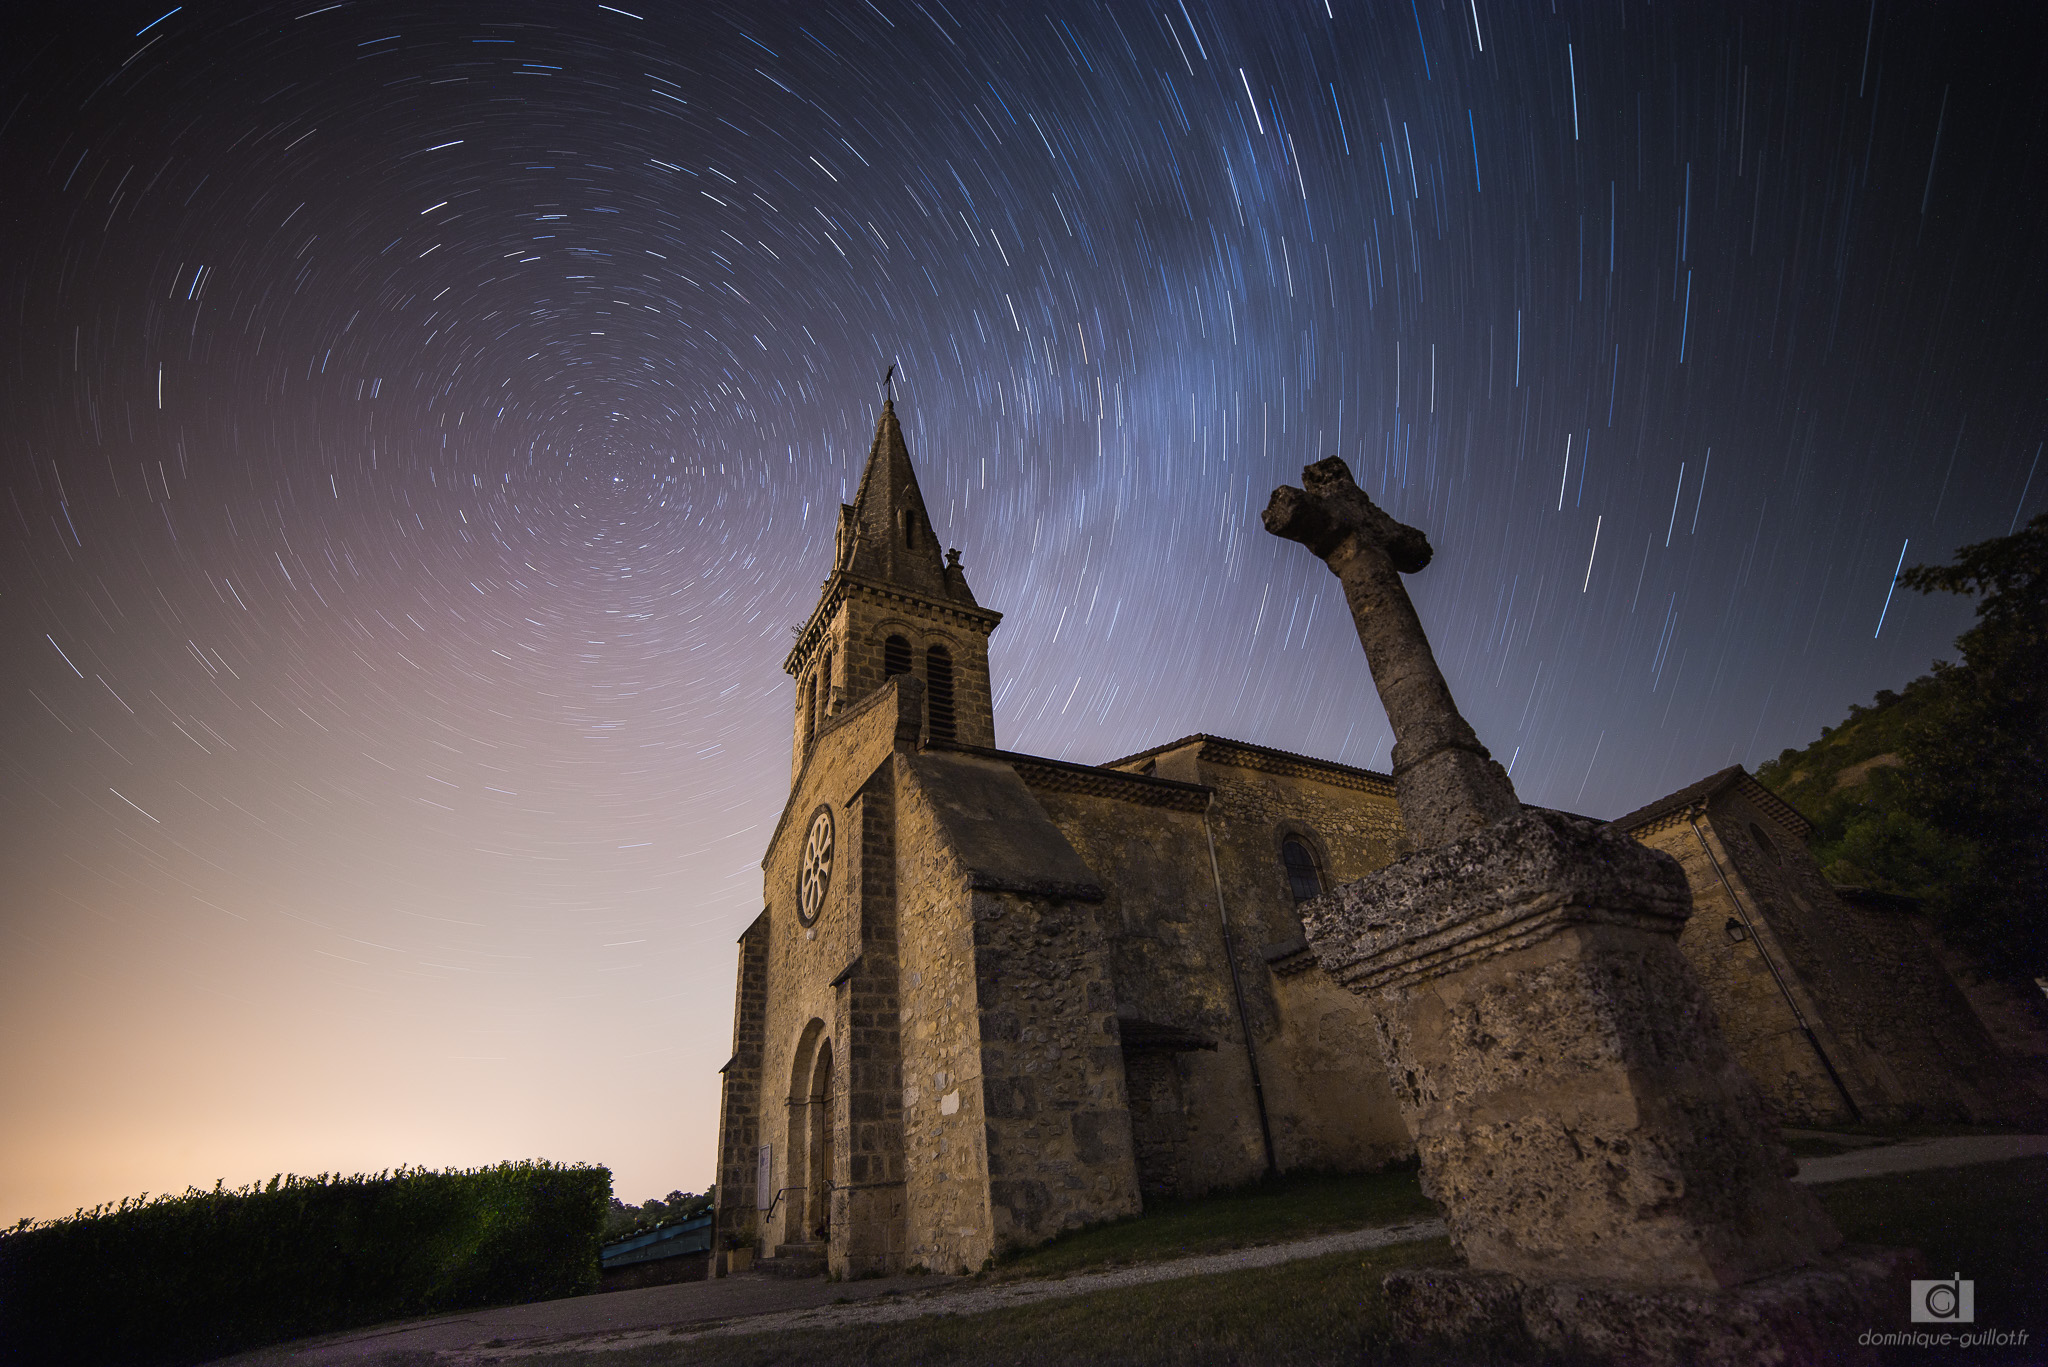 Eglise de châteaudouble sous un ciel étoilé